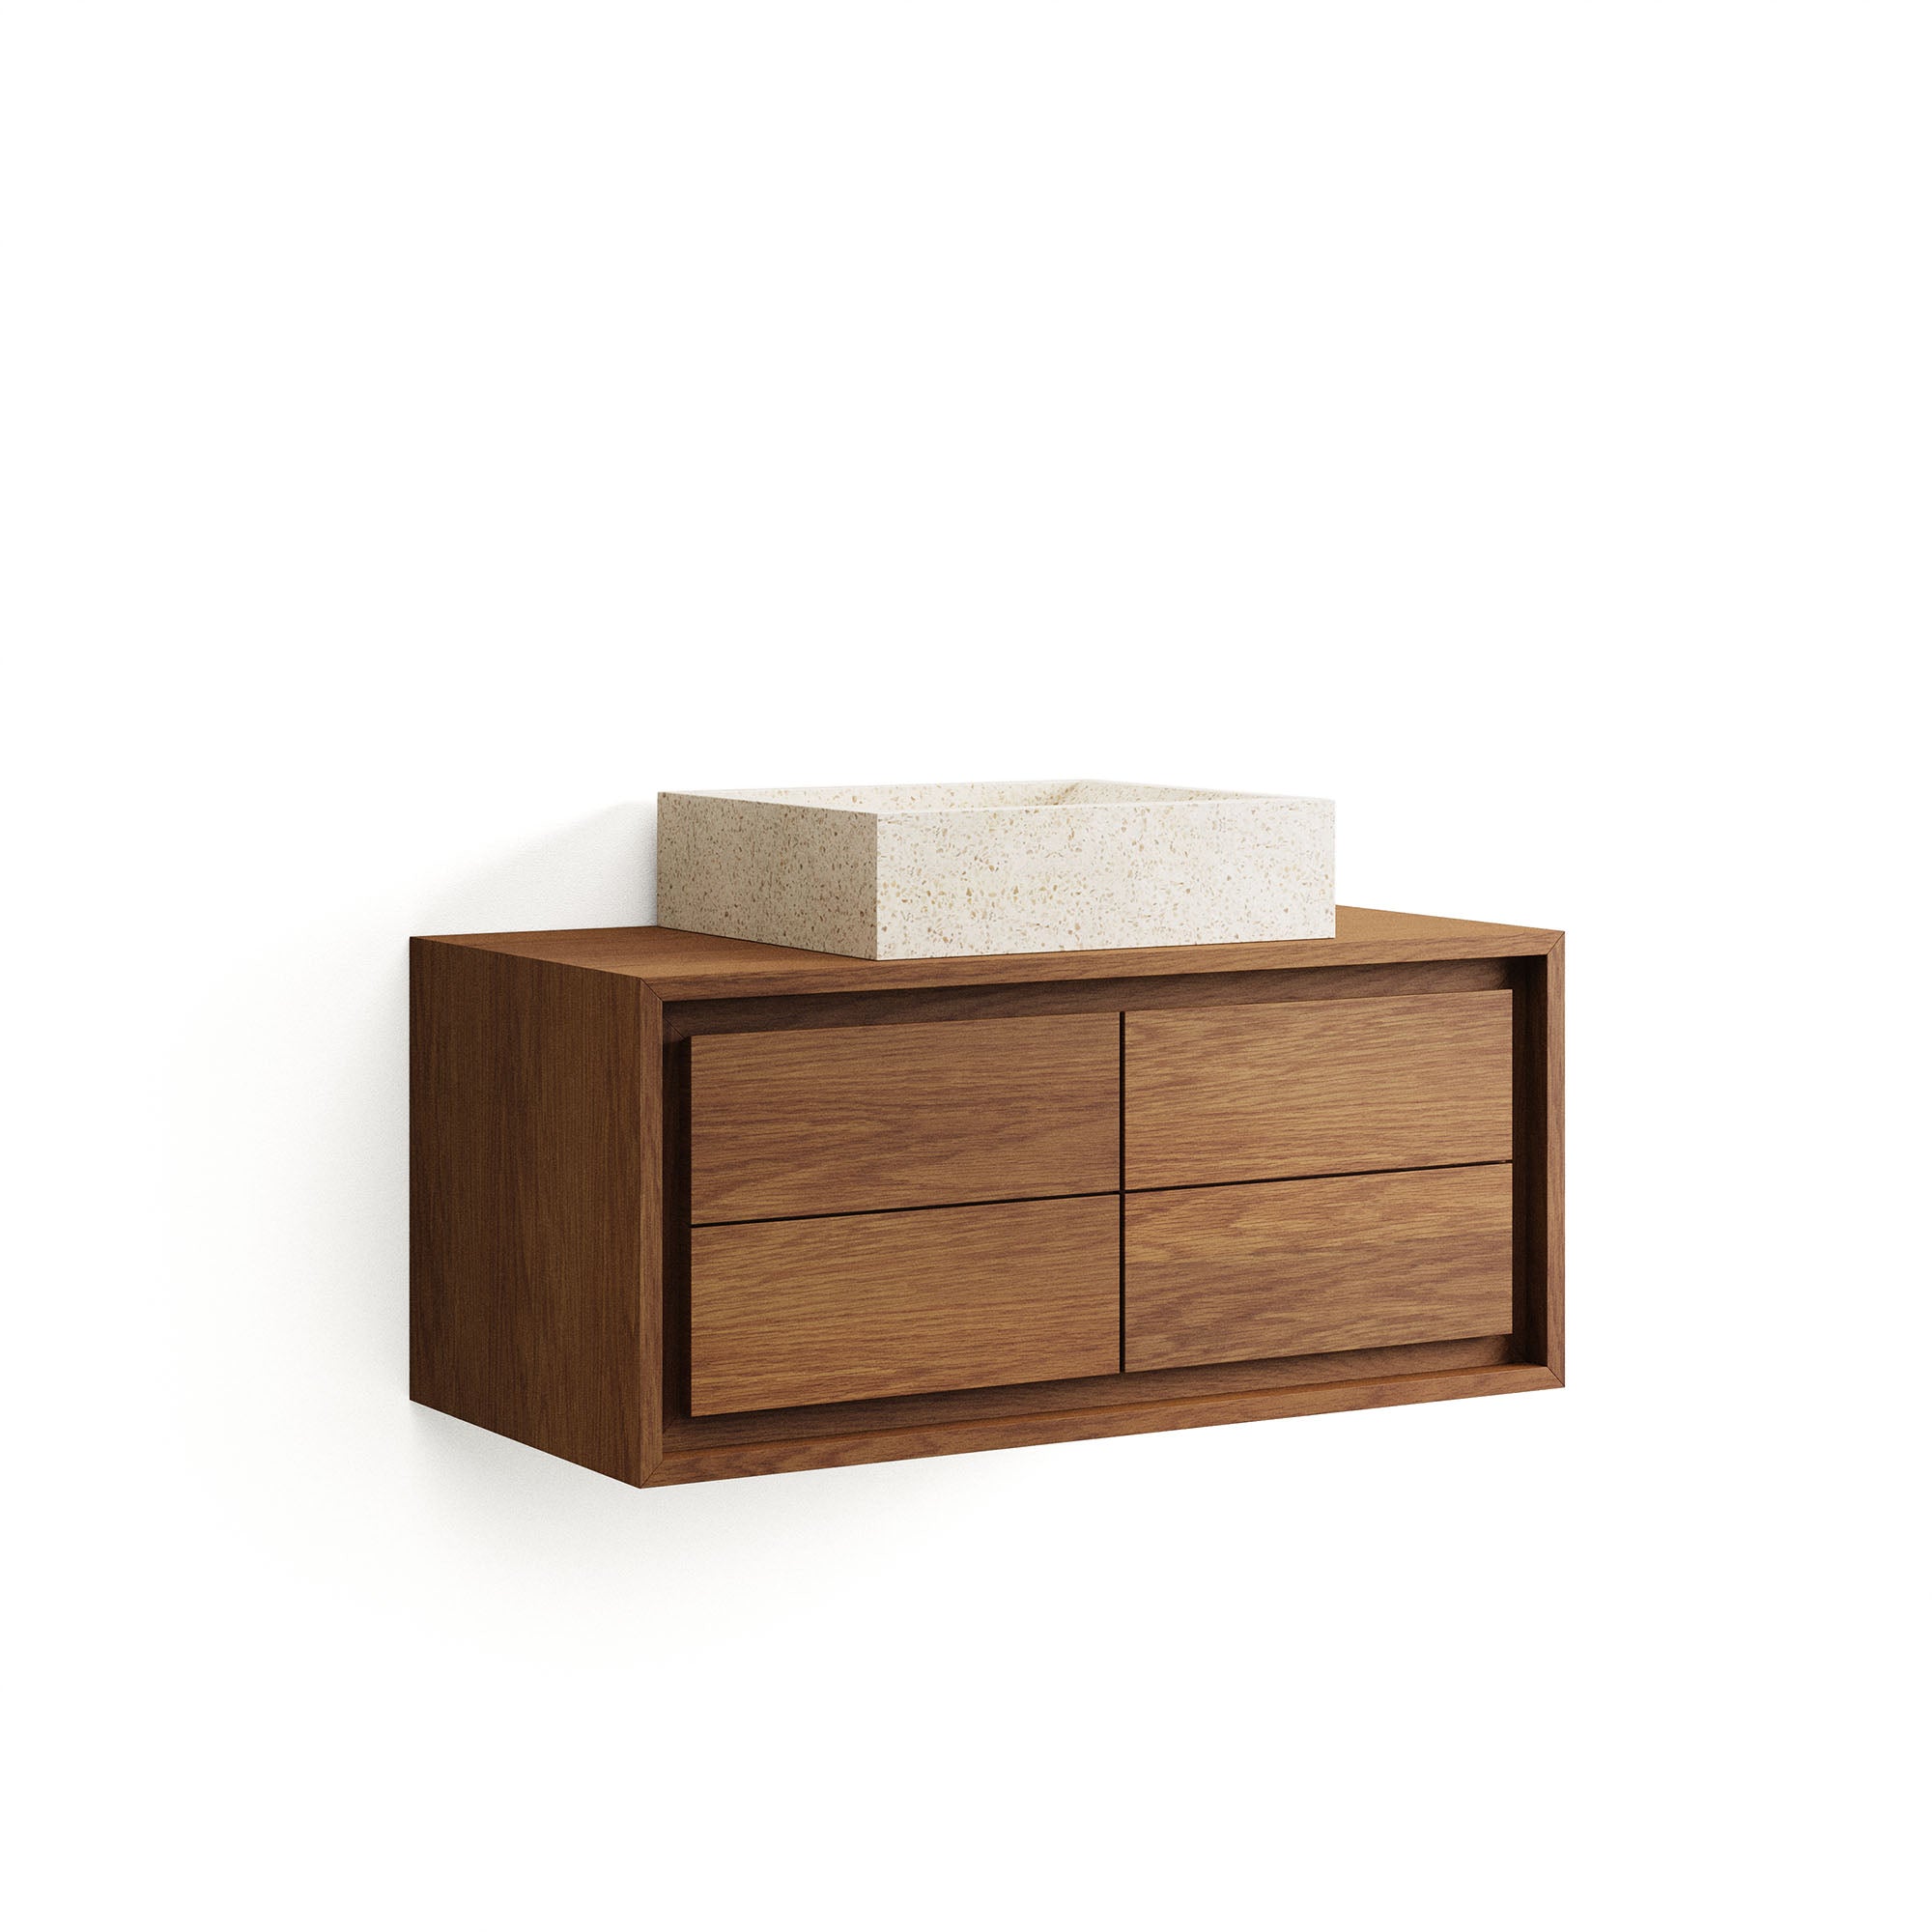 Kenta bathroom furniture in solid teak wood with a walnut finish, 90 x 45 cm